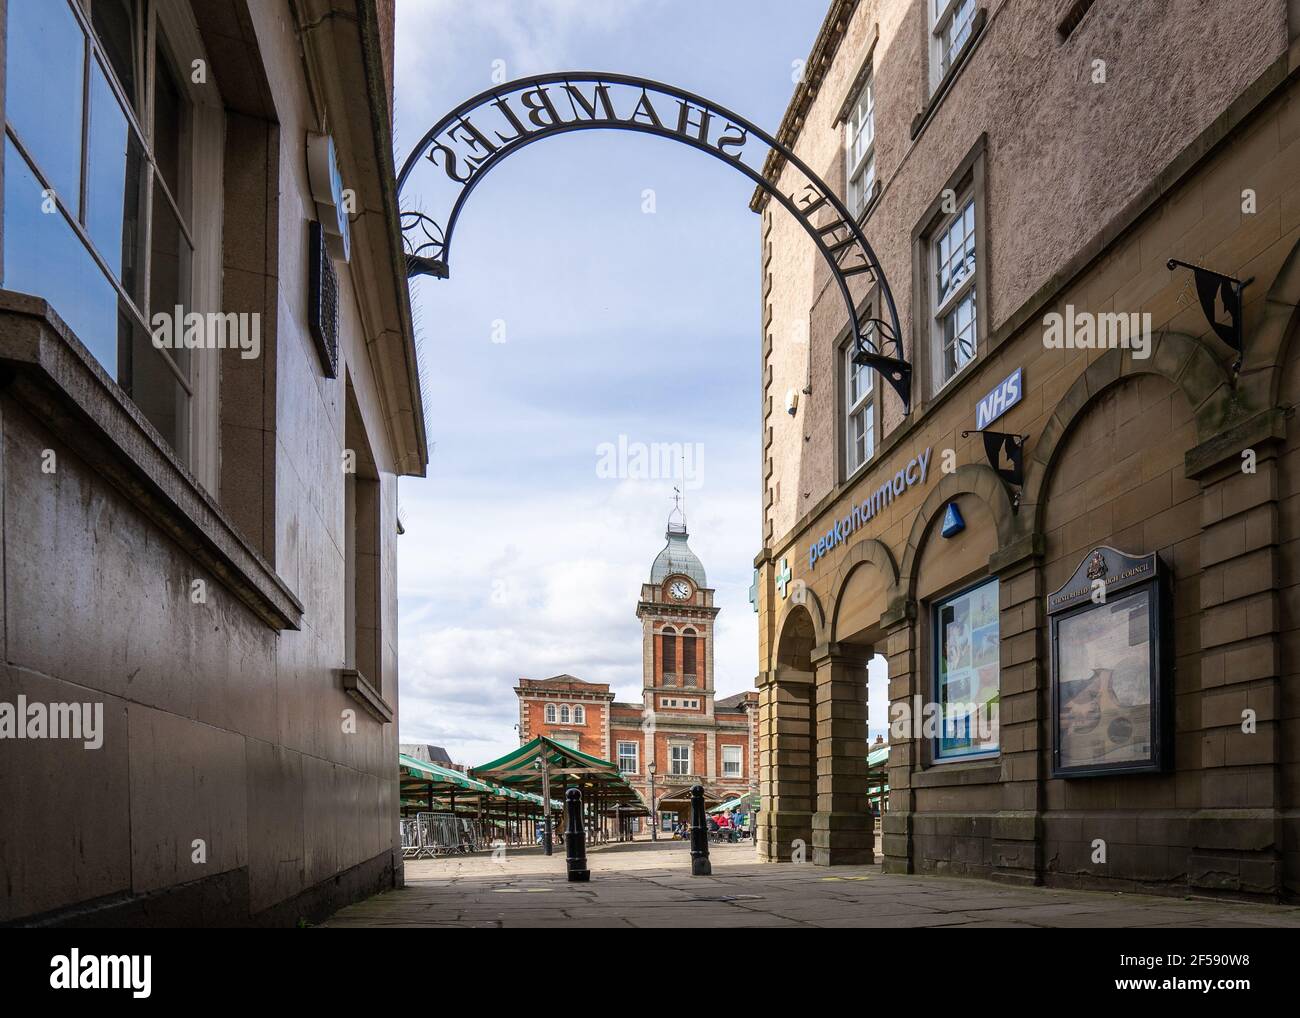 Chesterfield Town Hall con orologio e mercato all'aperto luogo preso dai negozi Shambles in estate bella vecchia città medievale con guglie storte. Foto Stock